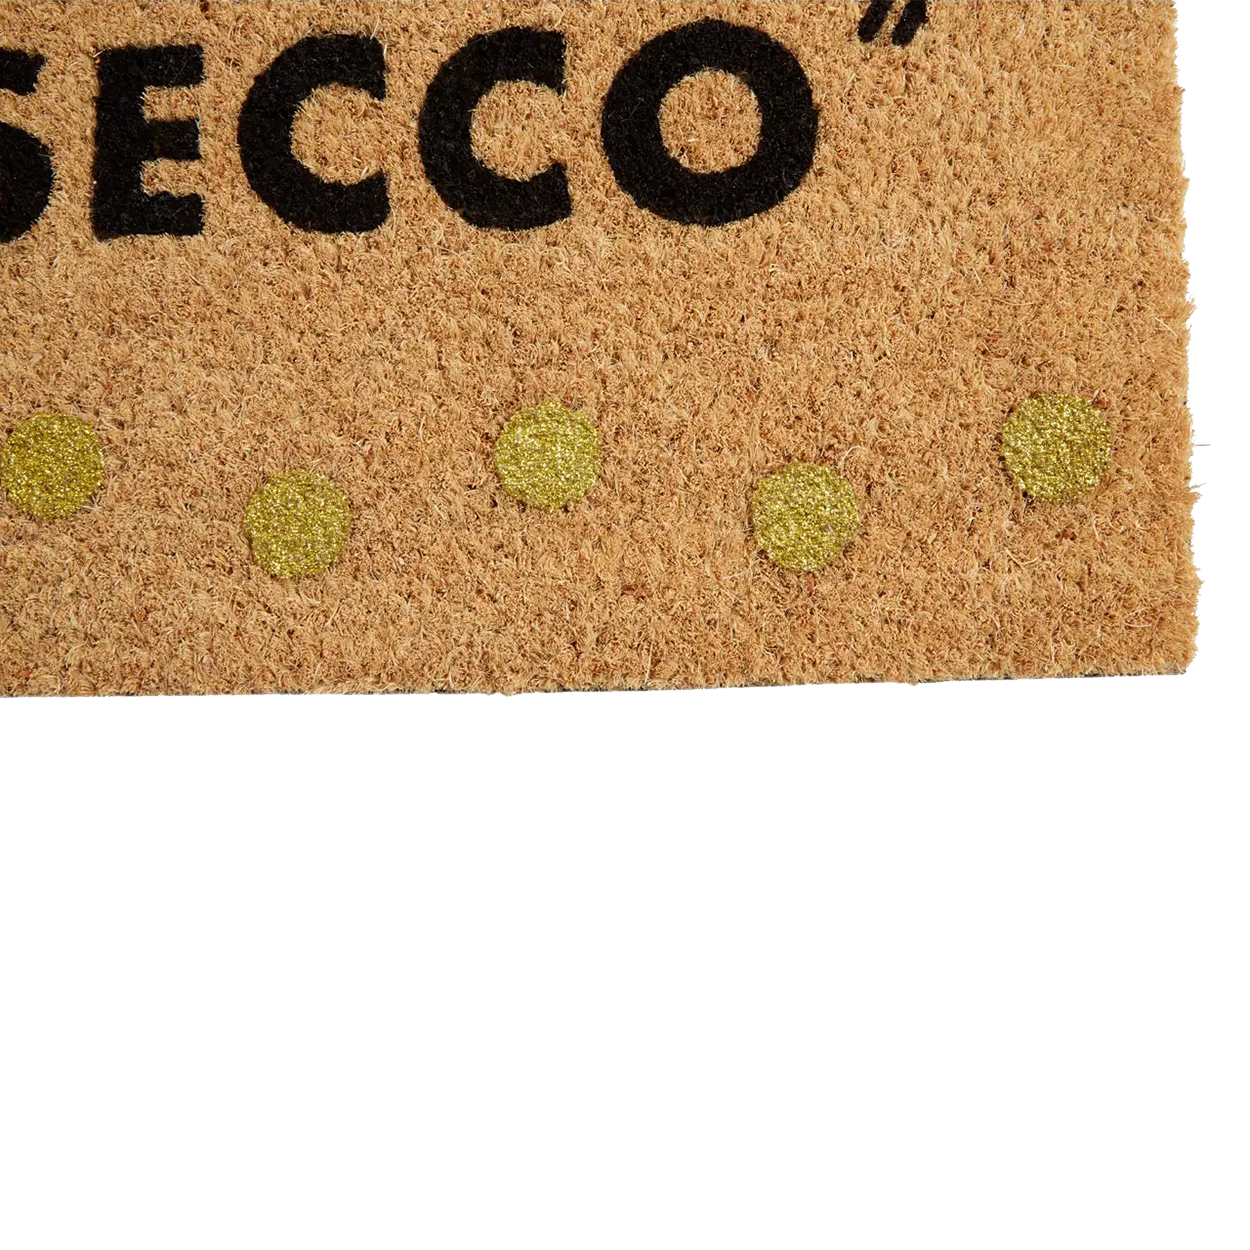 Prosecco Password Doormat